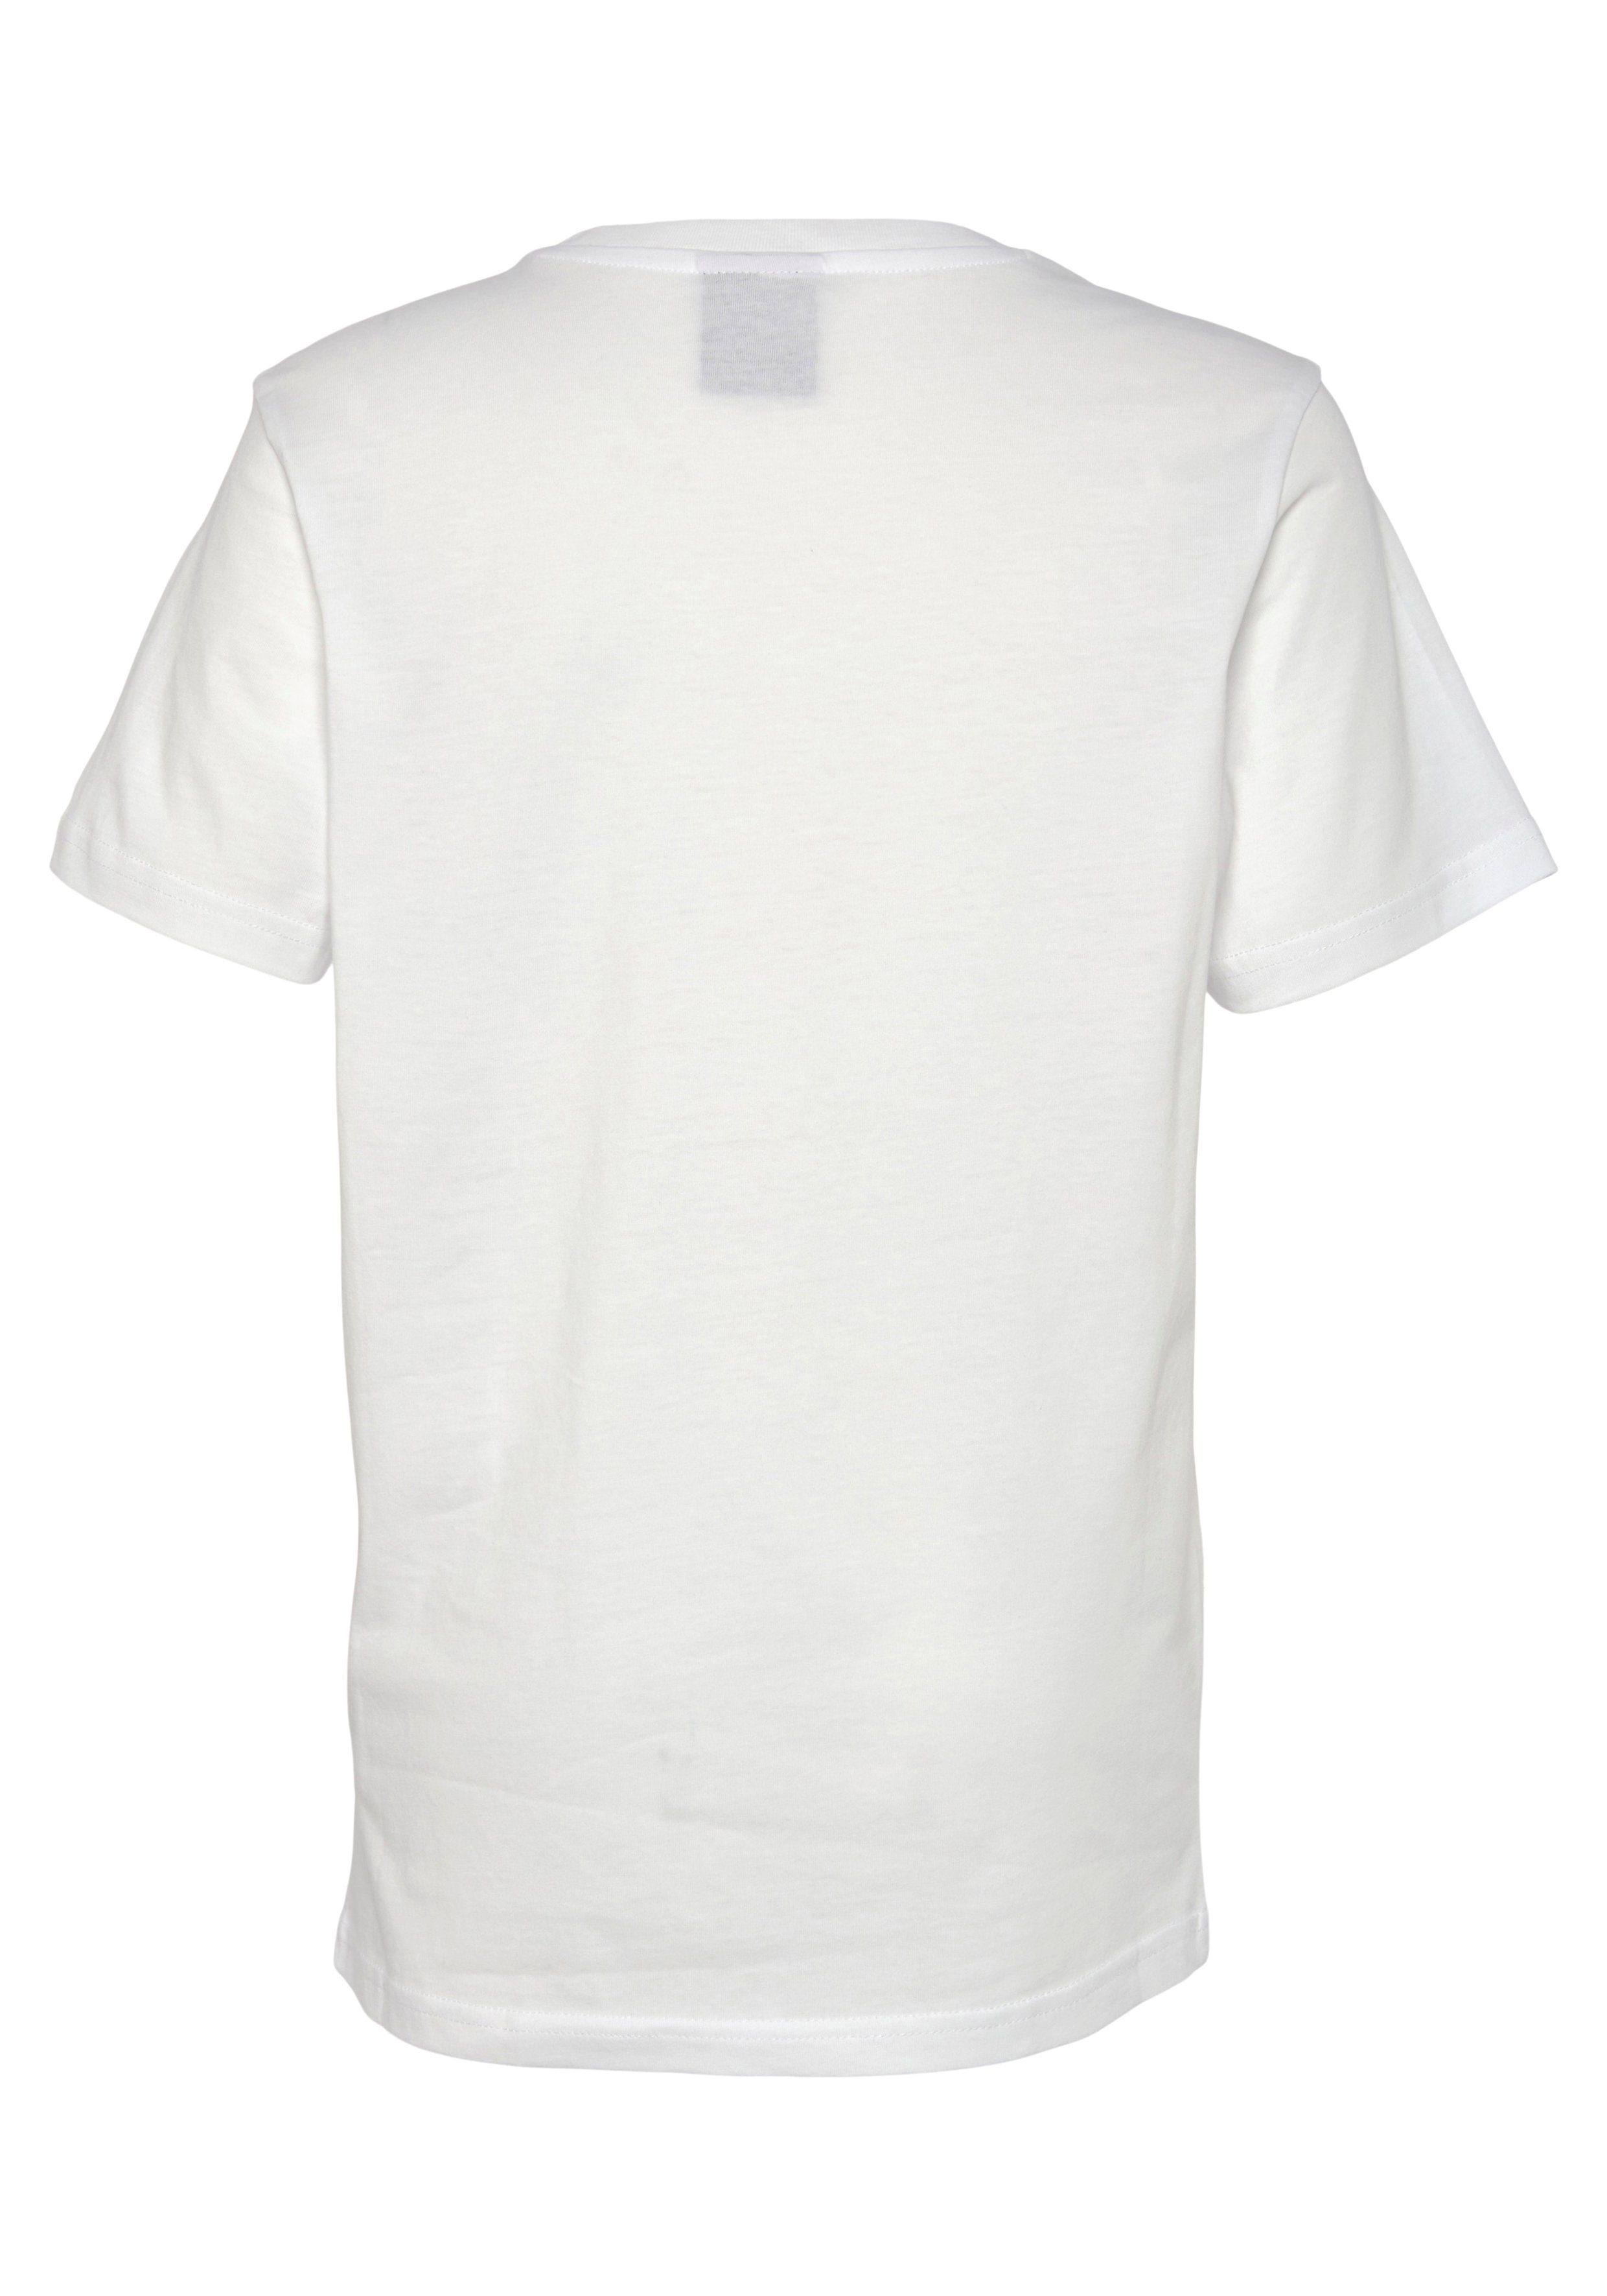 Crewneck T-Shirt Kinder - weiß Champion T-Shirt für